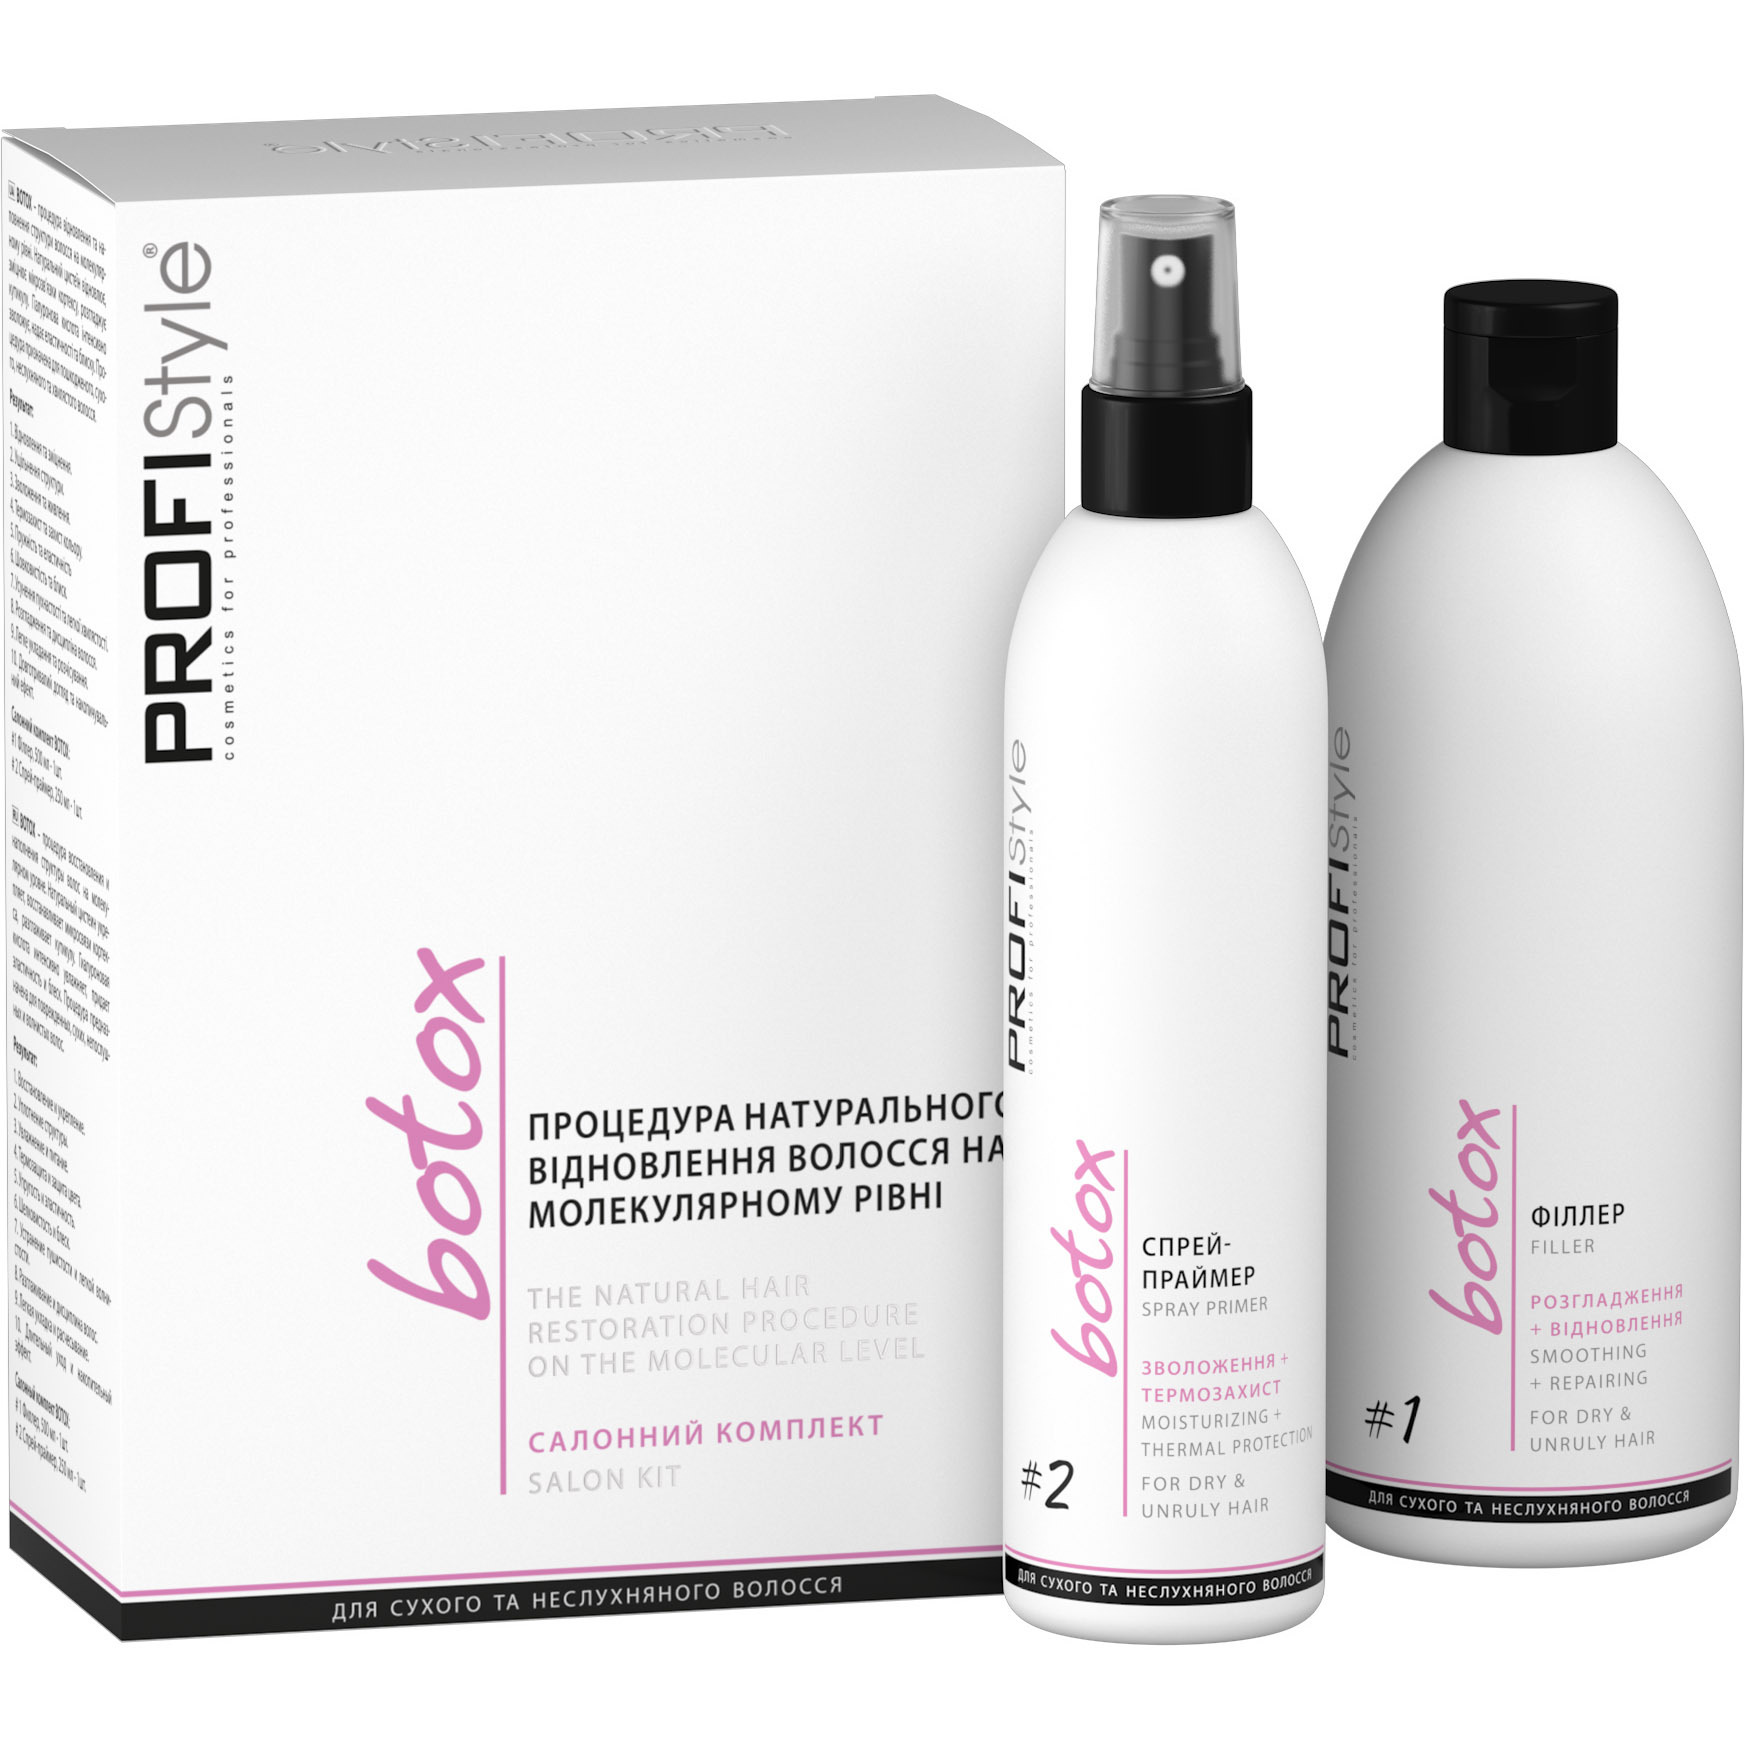 Салонний комплект: процедура натурального відновлення волосся на молекулярному рівні ProfiStyle Botox філер №1 500 мл + спрей-праймер №2 250 мл - фото 1